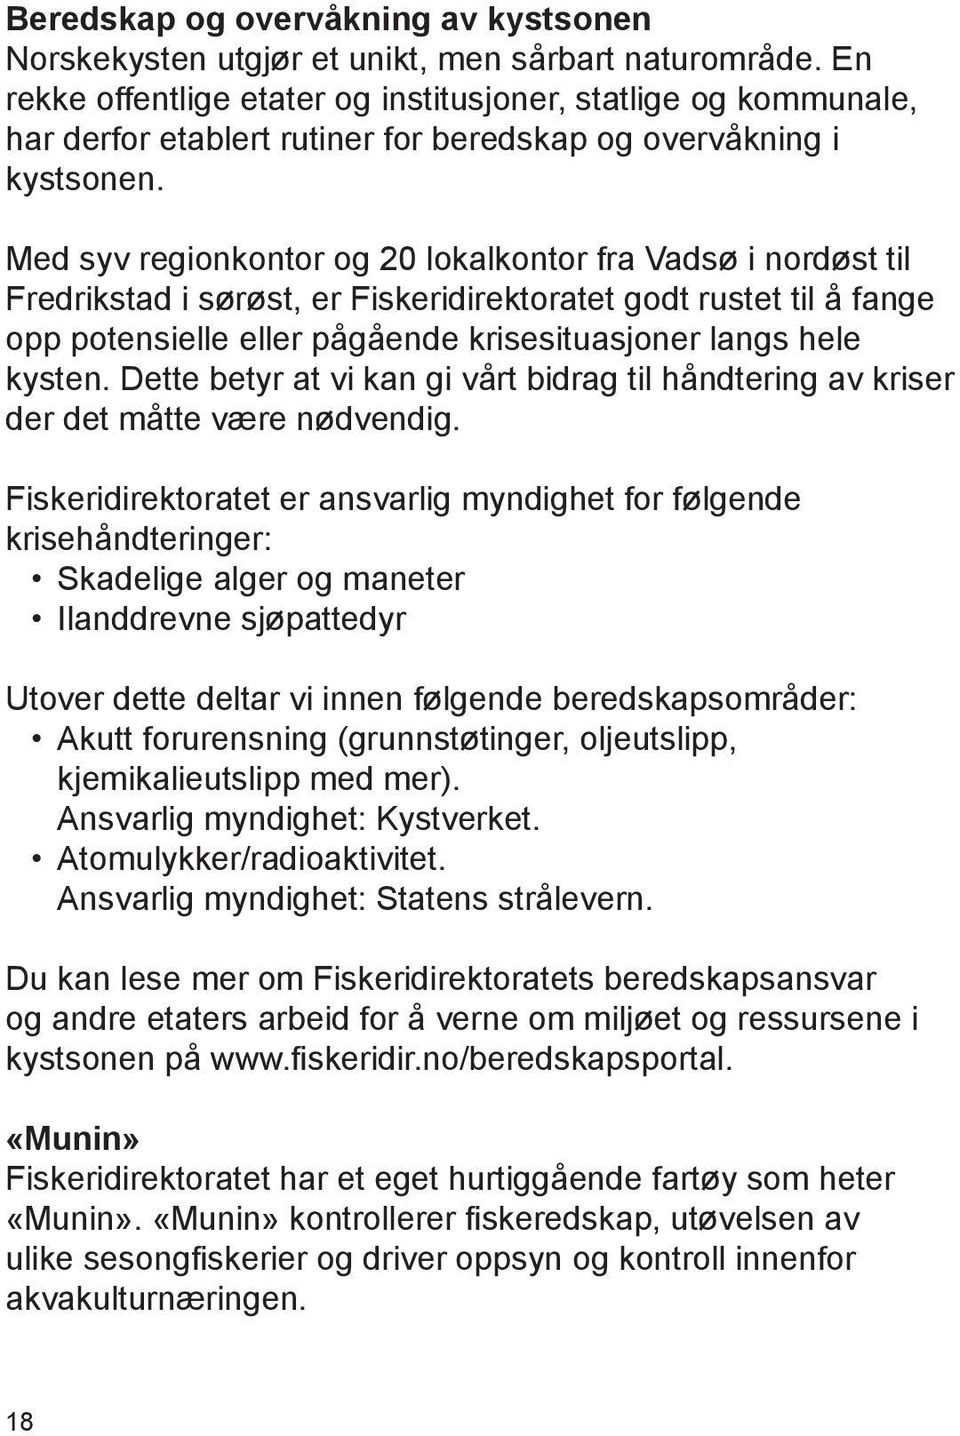 Med syv regionkontor og 20 lokalkontor fra Vadsø i nordøst til Fredrikstad i sørøst, er Fiskeridirektoratet godt rustet til å fange opp potensielle eller pågående krisesituasjoner langs hele kysten.